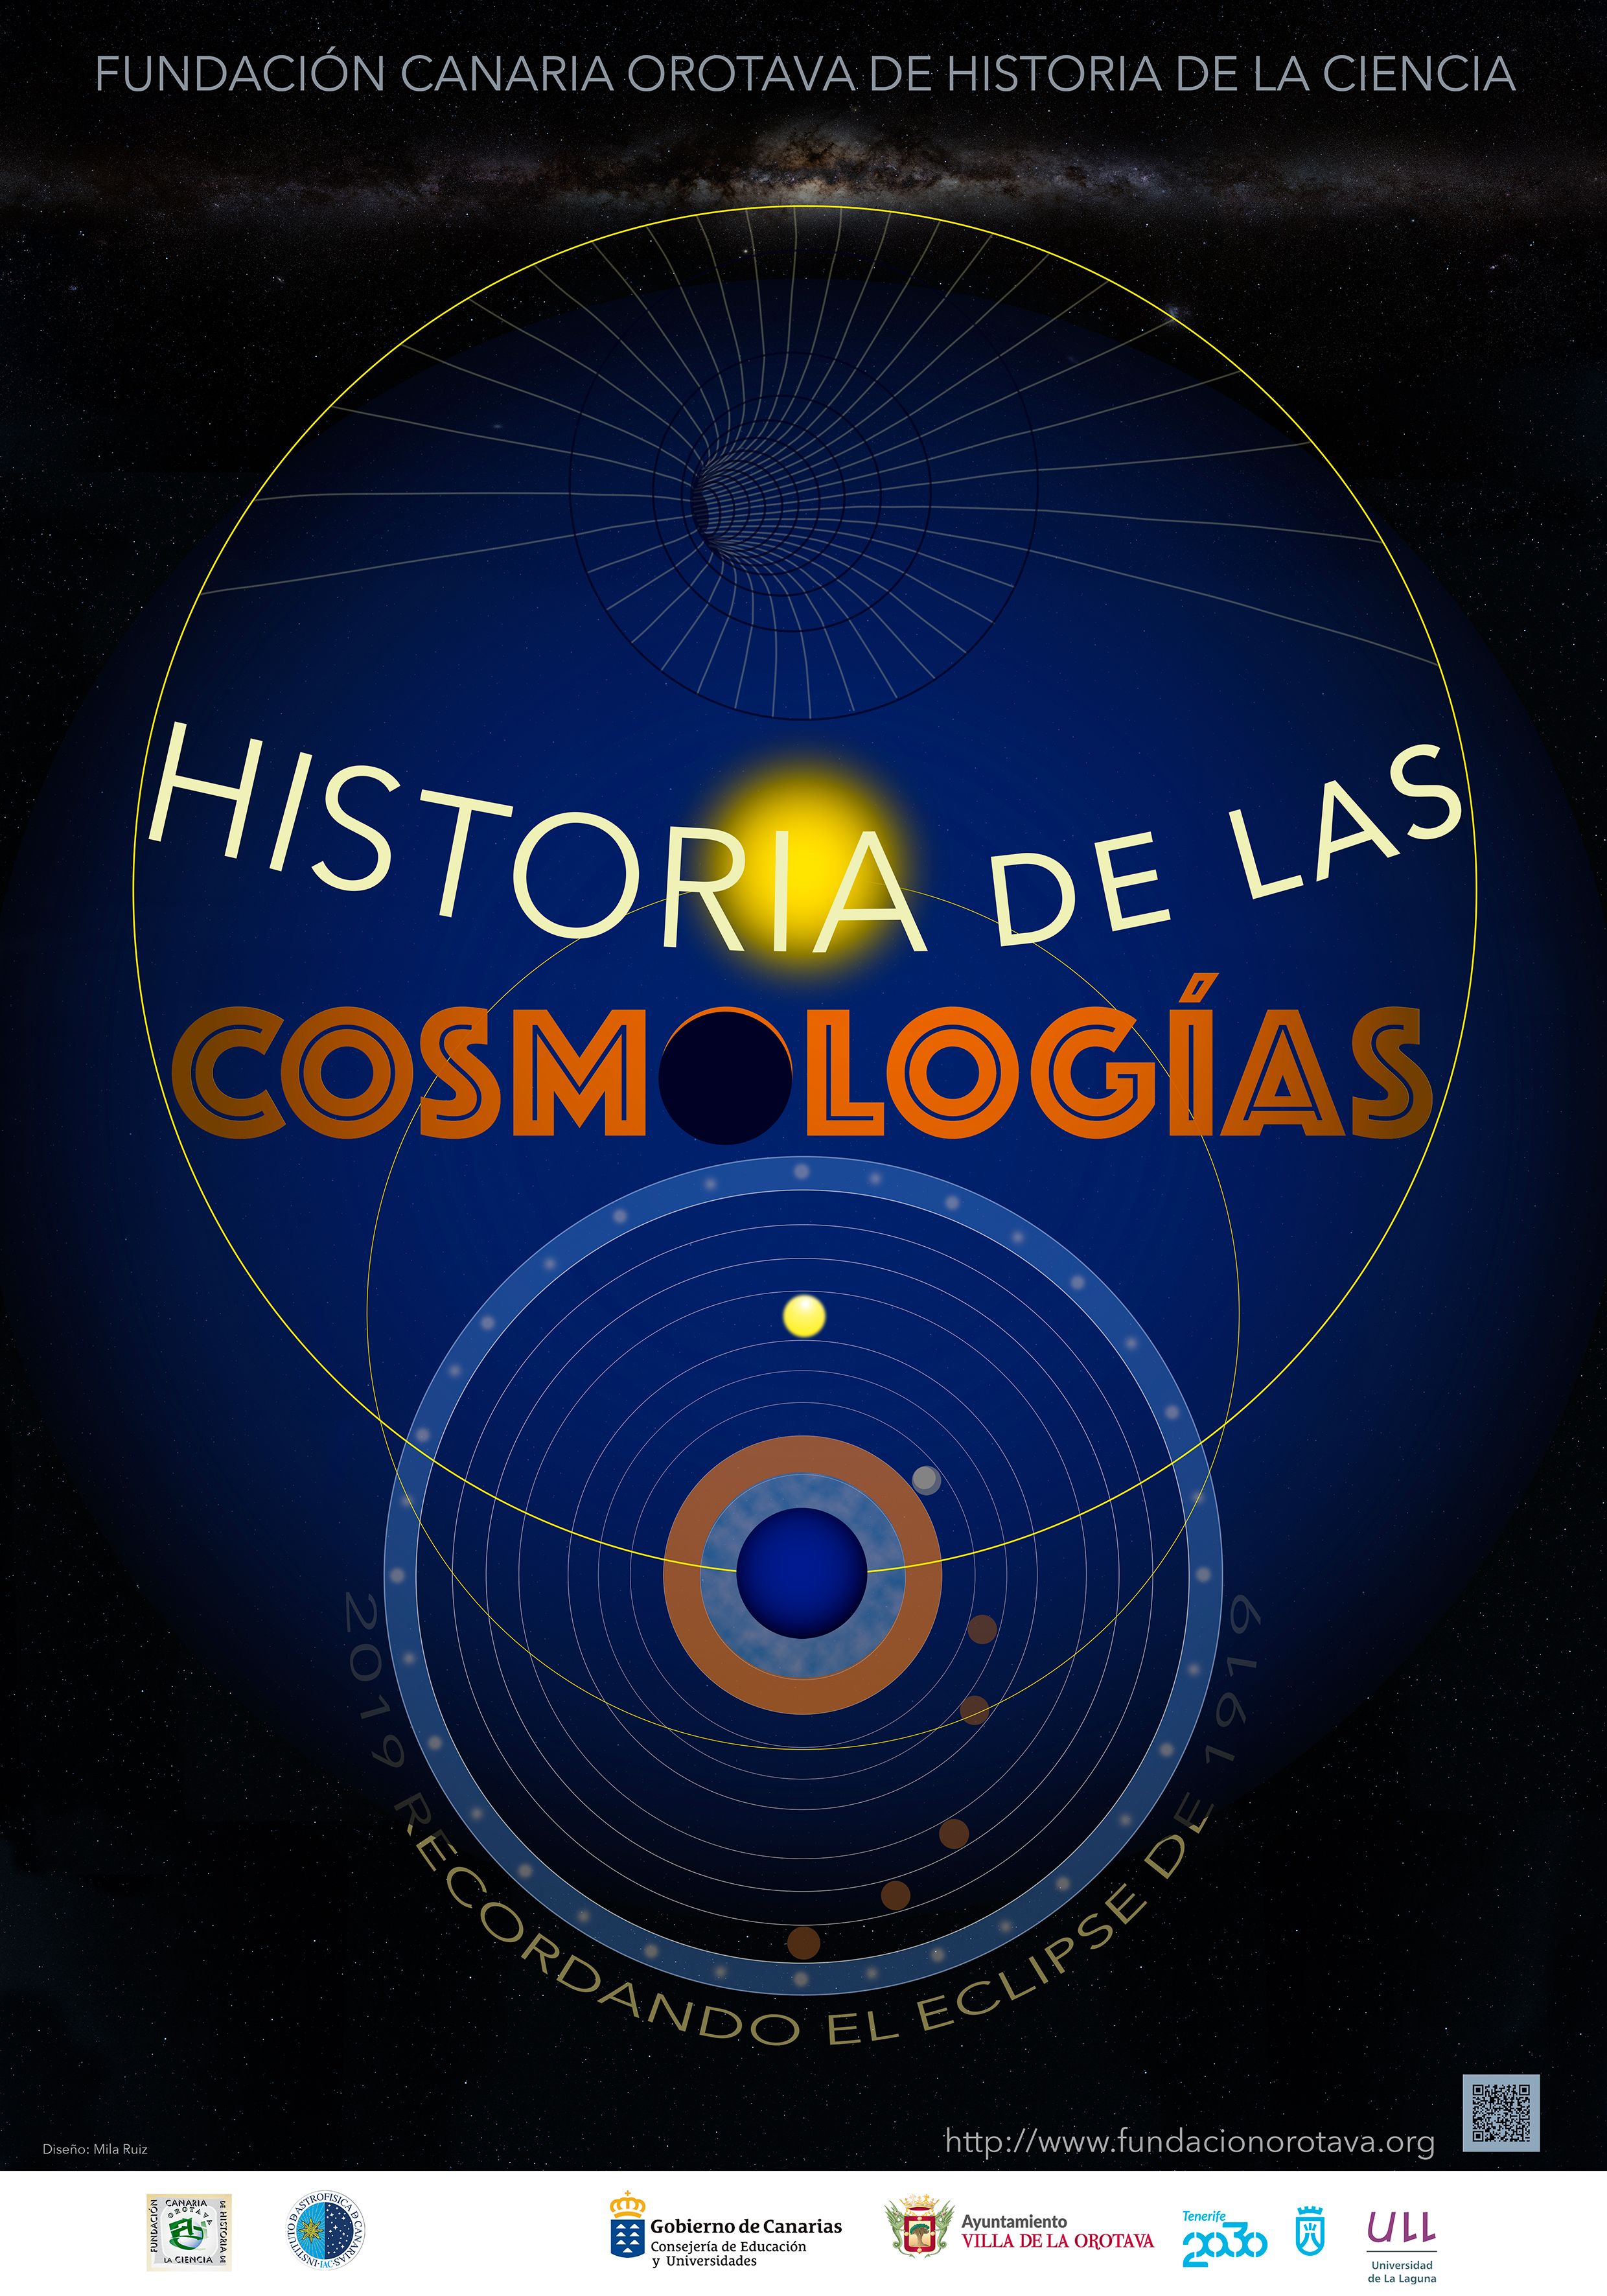 Cartel anunciador de Historia de las Cosmologías